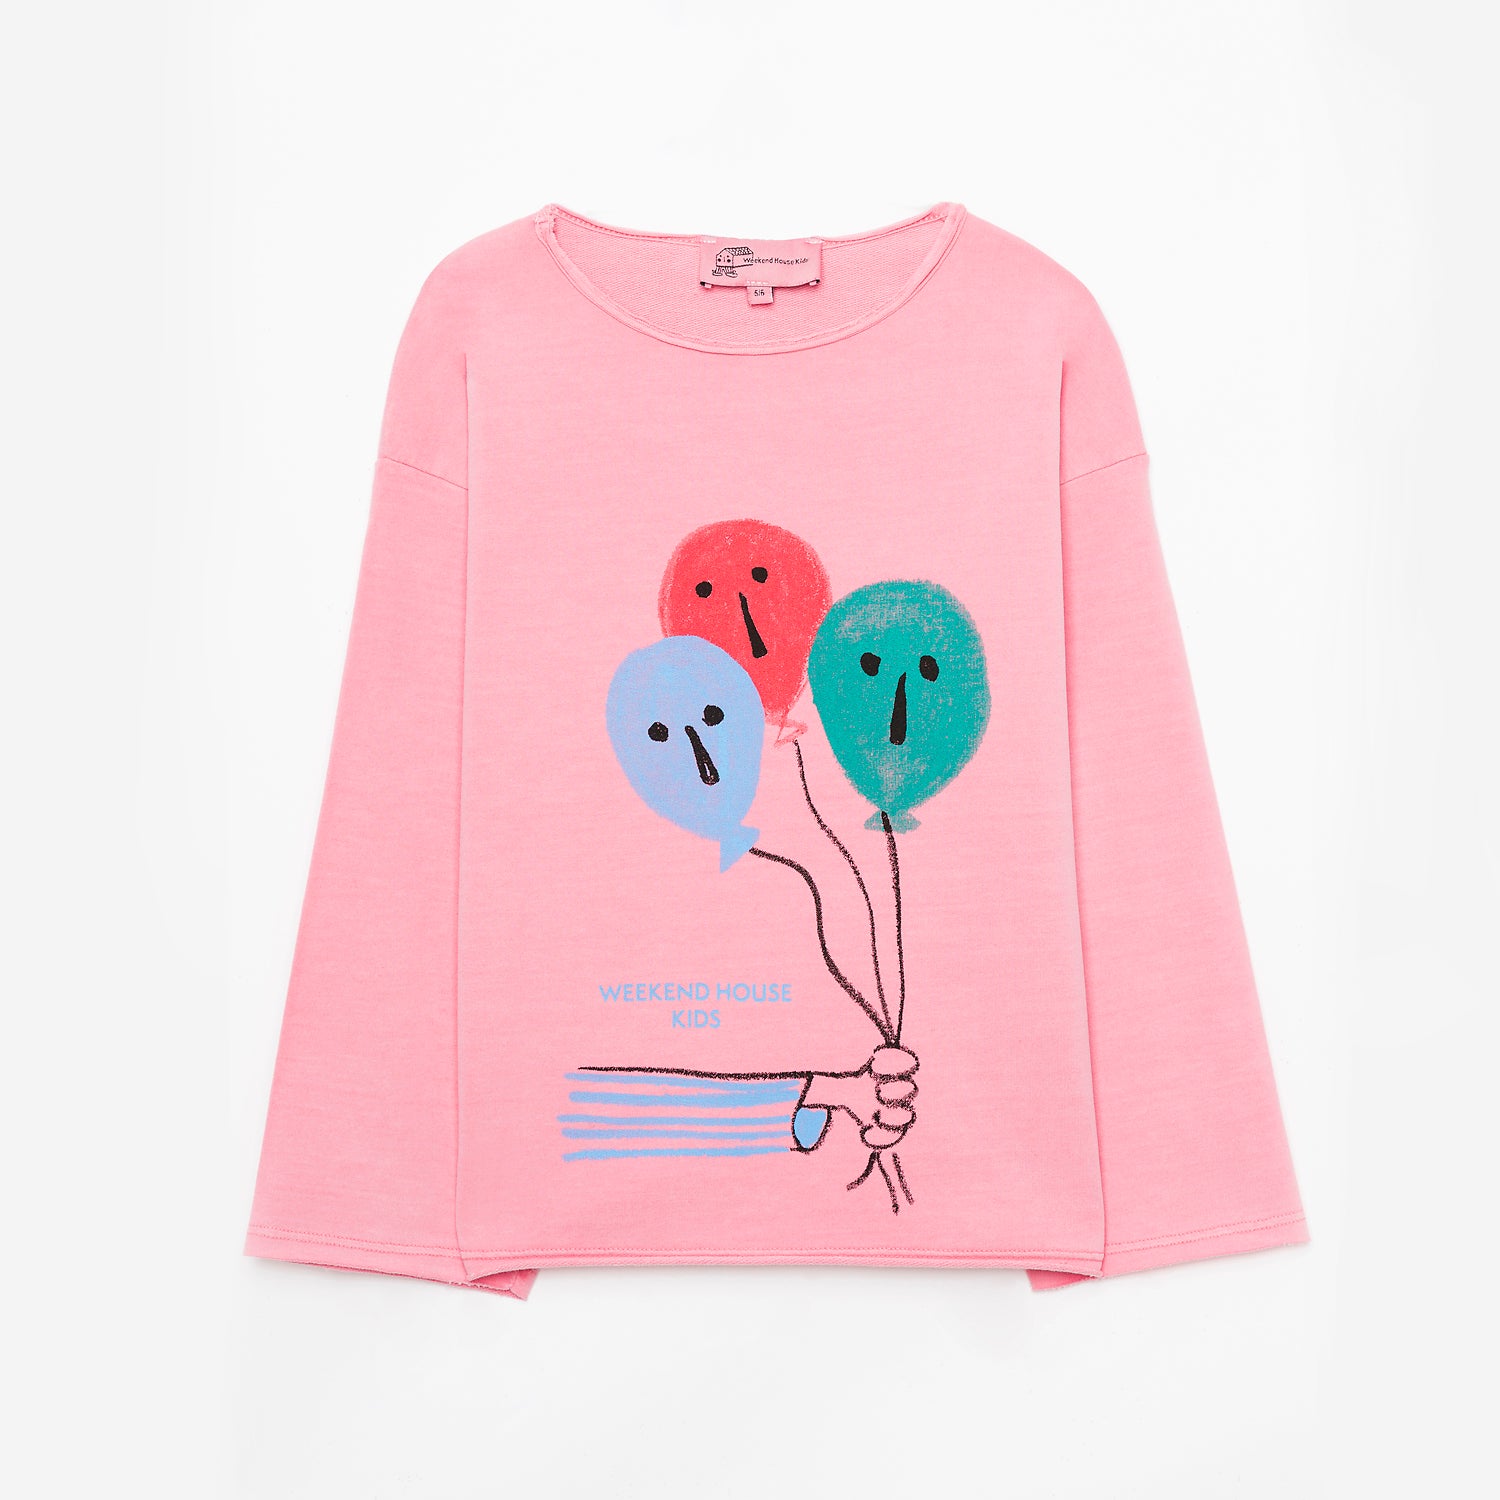 Weeekend House Kids Organic Cotton Ballon Pink Sweat Shirt